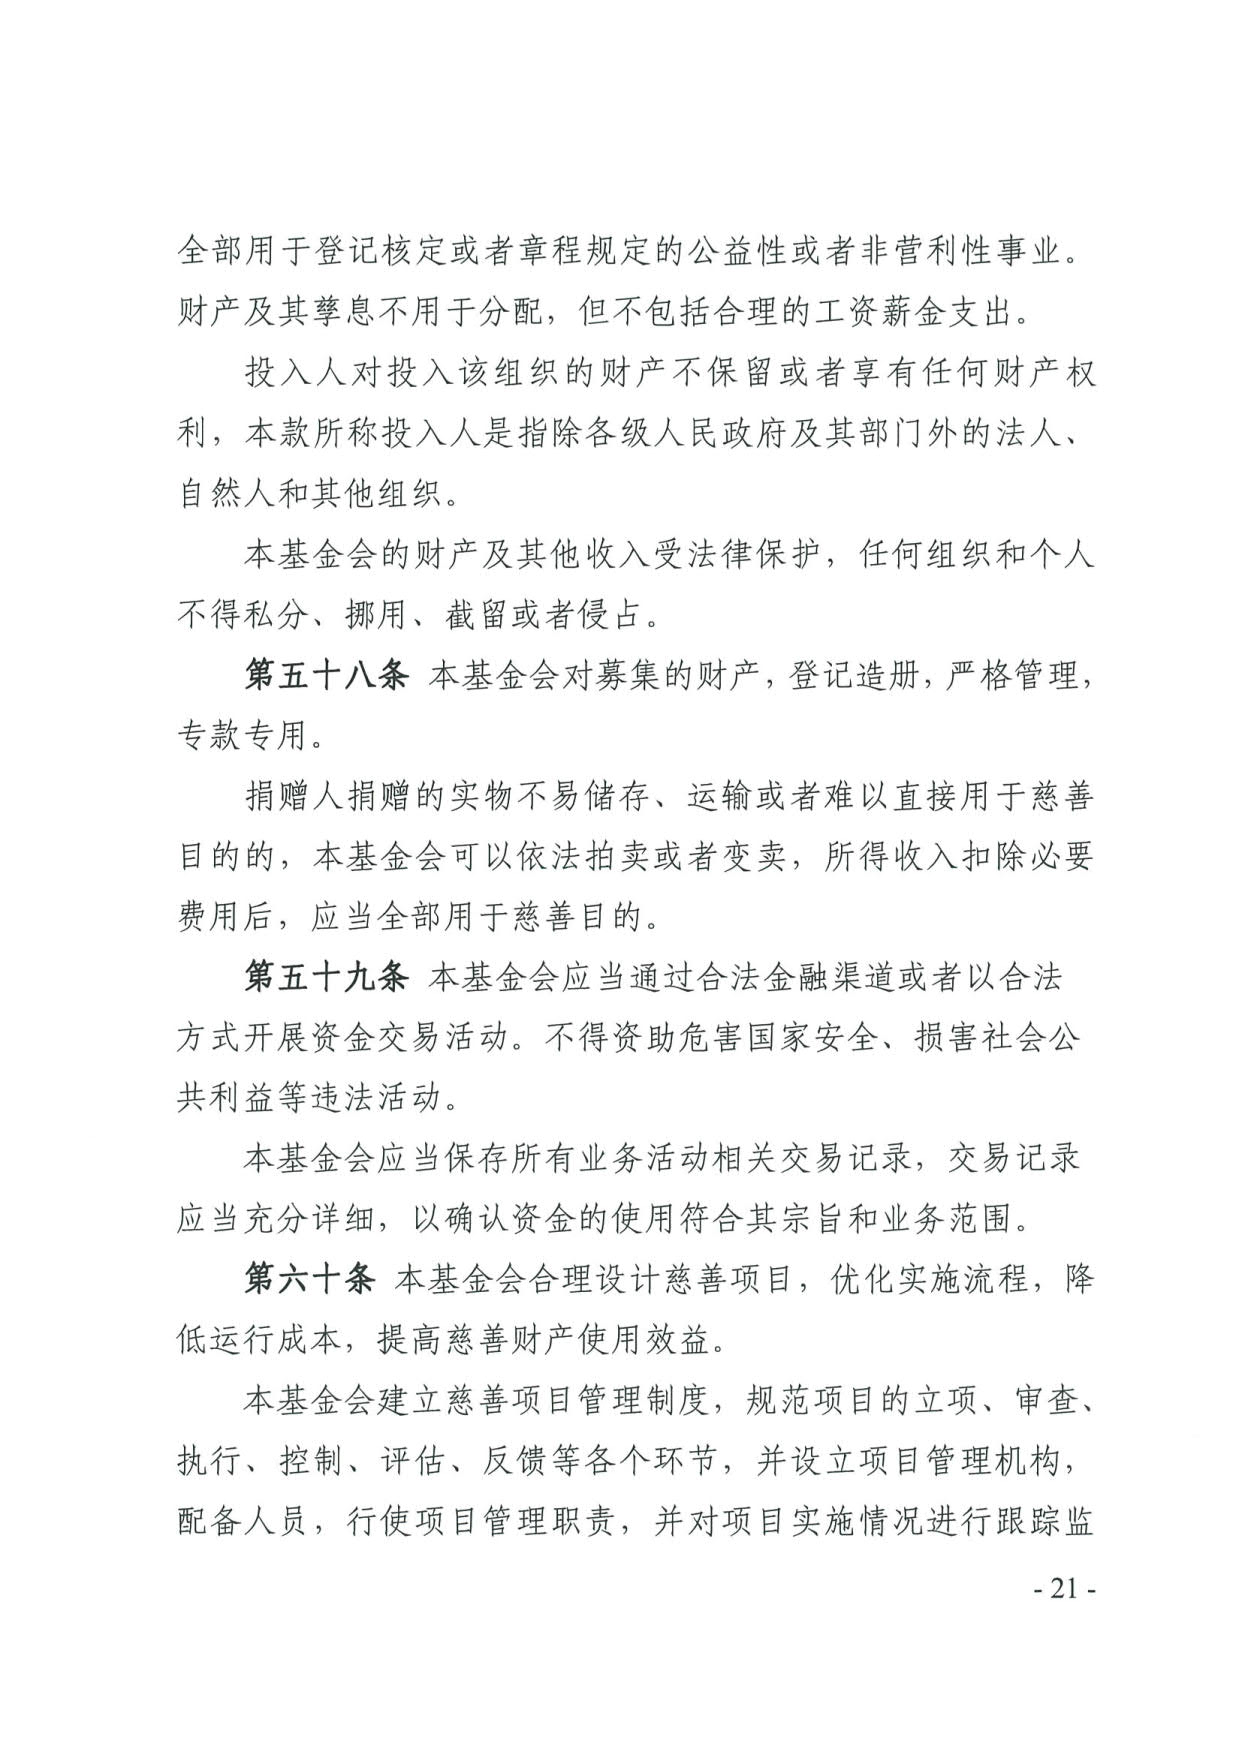 广东省民政厅关于印发《广东省基金会章程示范文本》的通知(4)_21.jpg